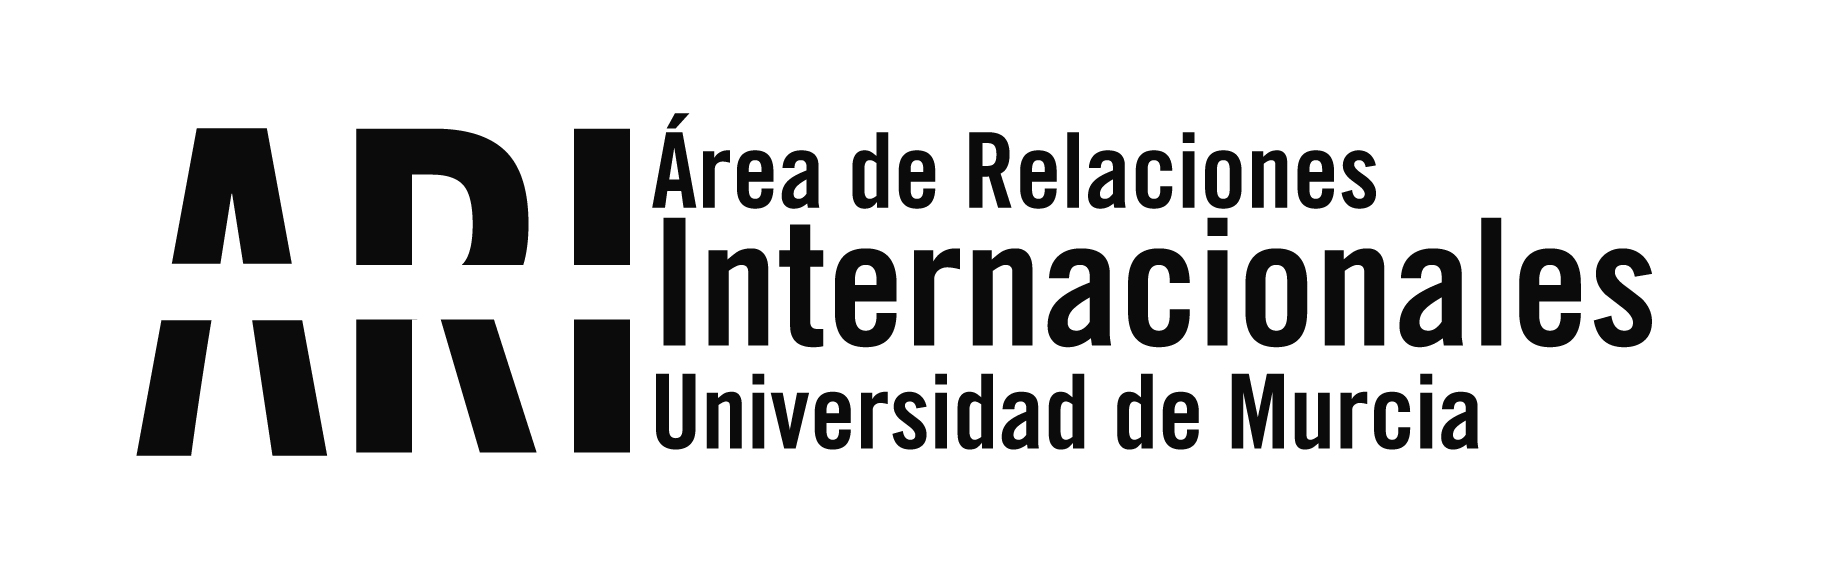 La UMU recibe a la universidad mexicana CETYS - Área de Relaciones Internacionales